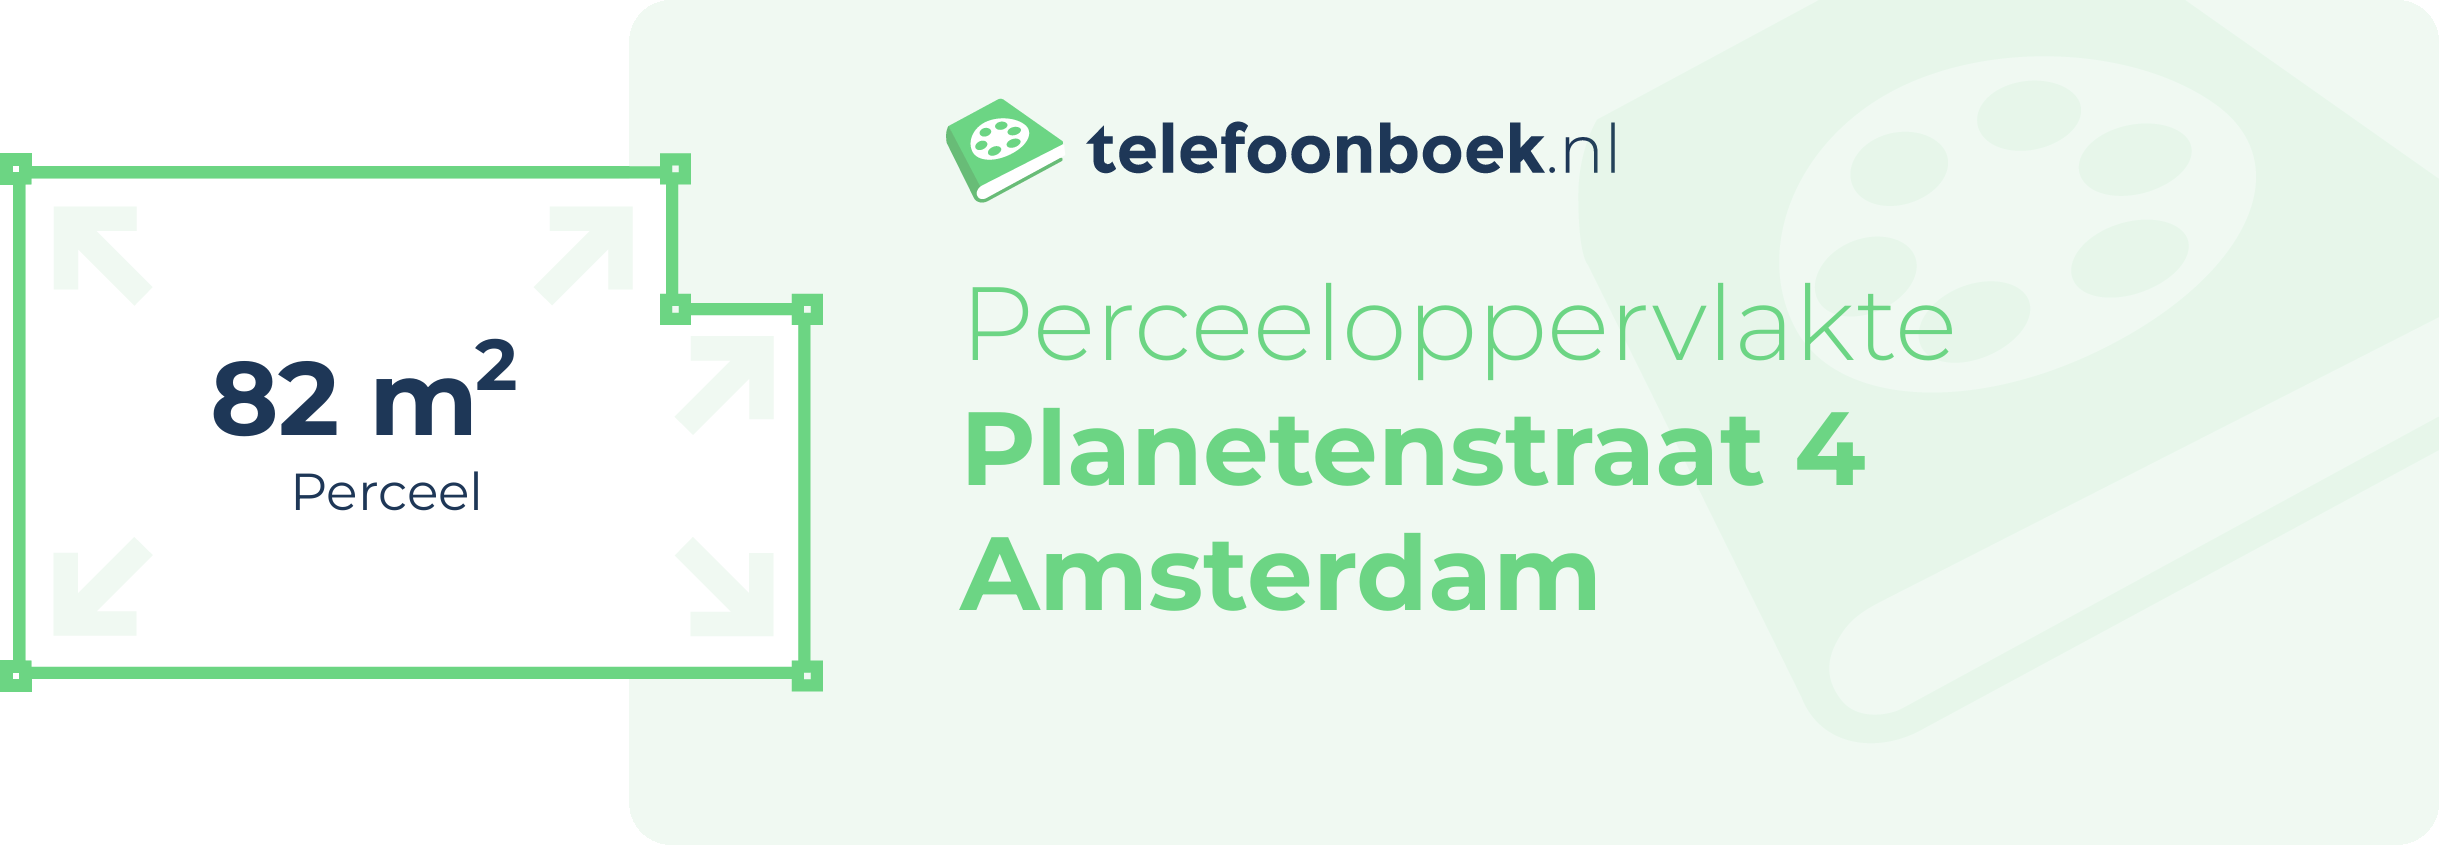 Perceeloppervlakte Planetenstraat 4 Amsterdam